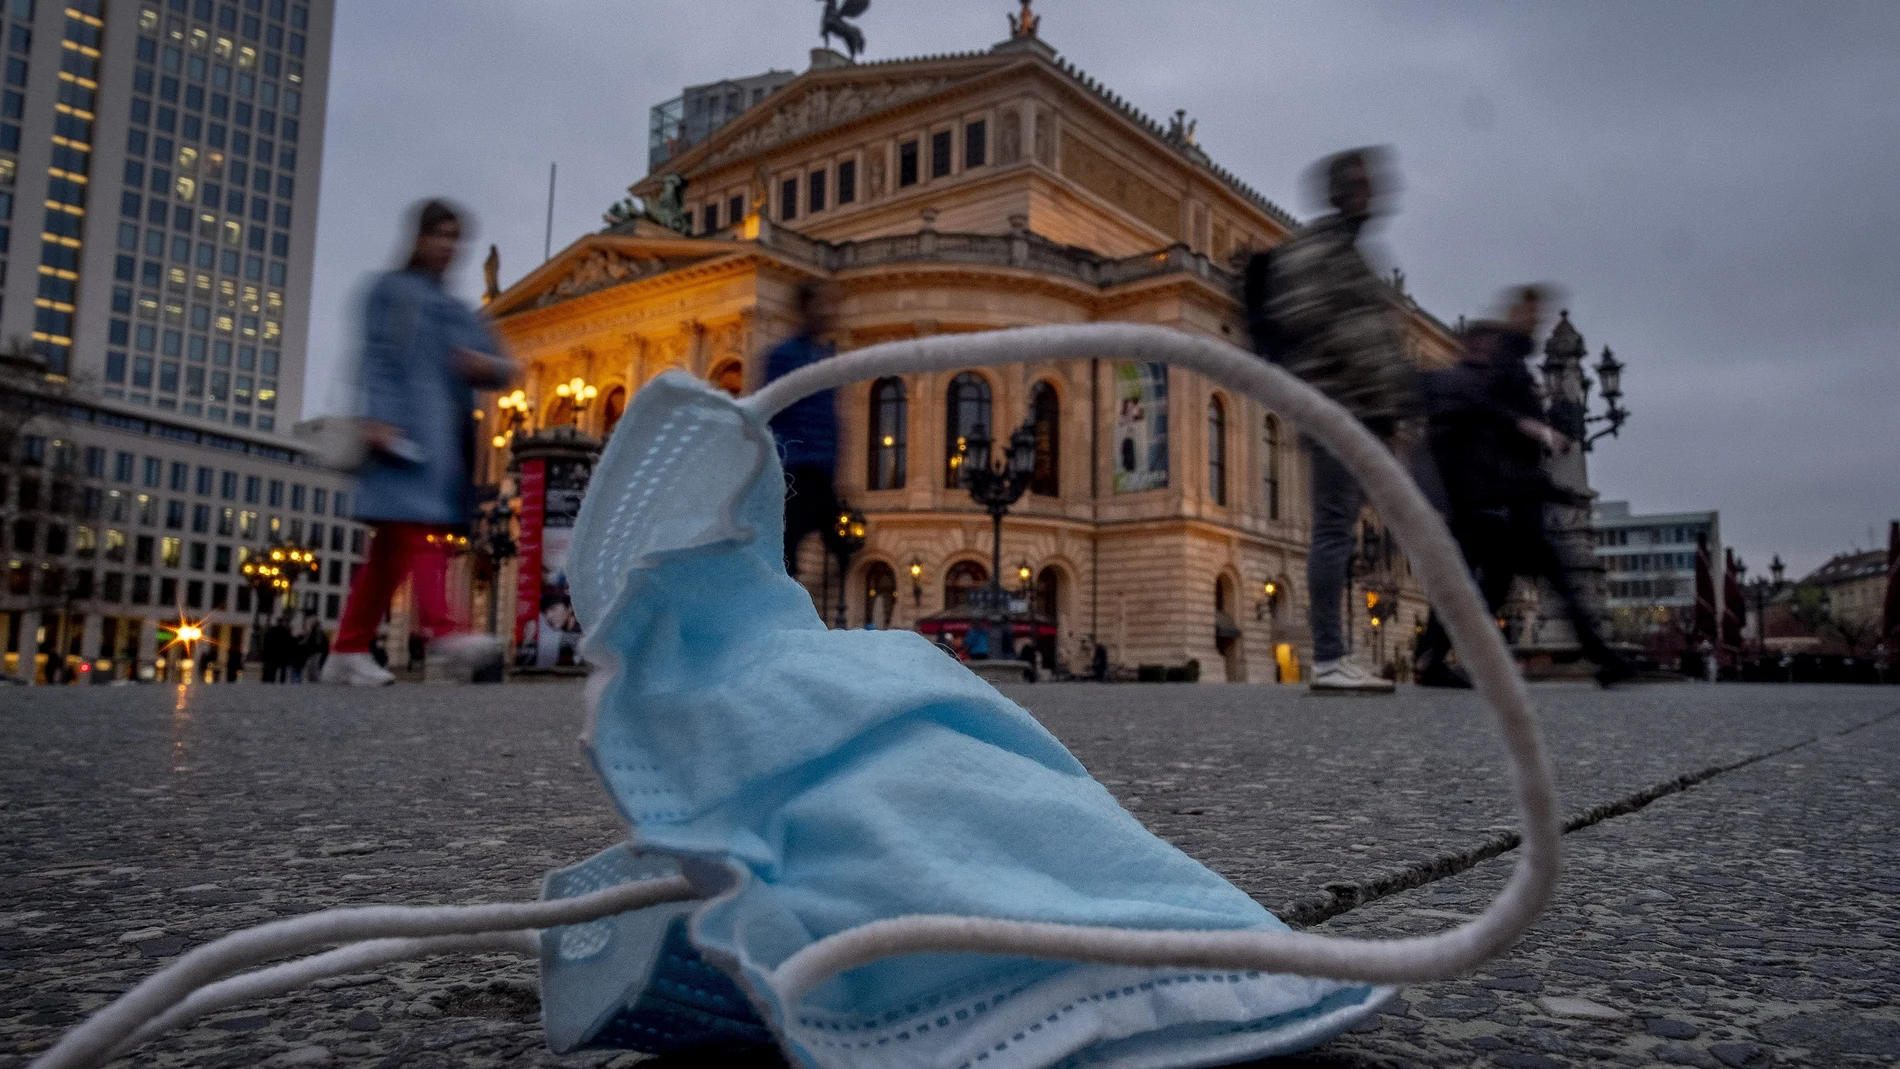 Una mascarilla tirada en el suelo frente al edificio de la Ópera Antigua en Frankfurt (Alemania)